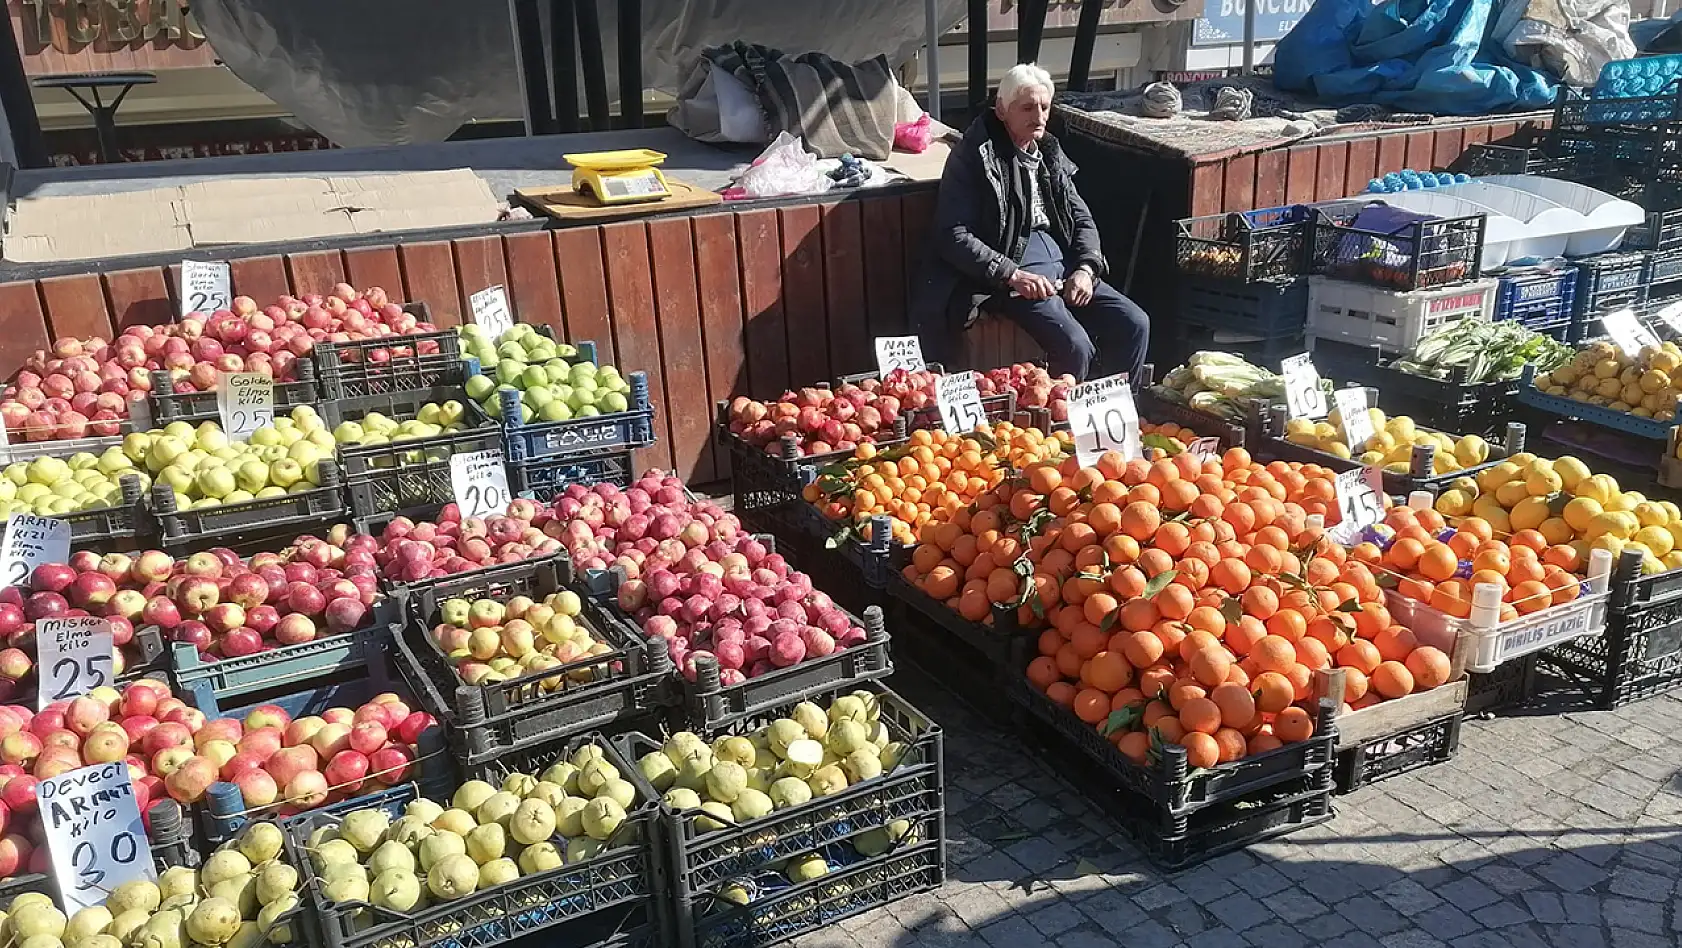 Elazığ'daki Bu Pazar, Diğer Pazarlara ve Zincir Marketlere Meydan Okuyor!